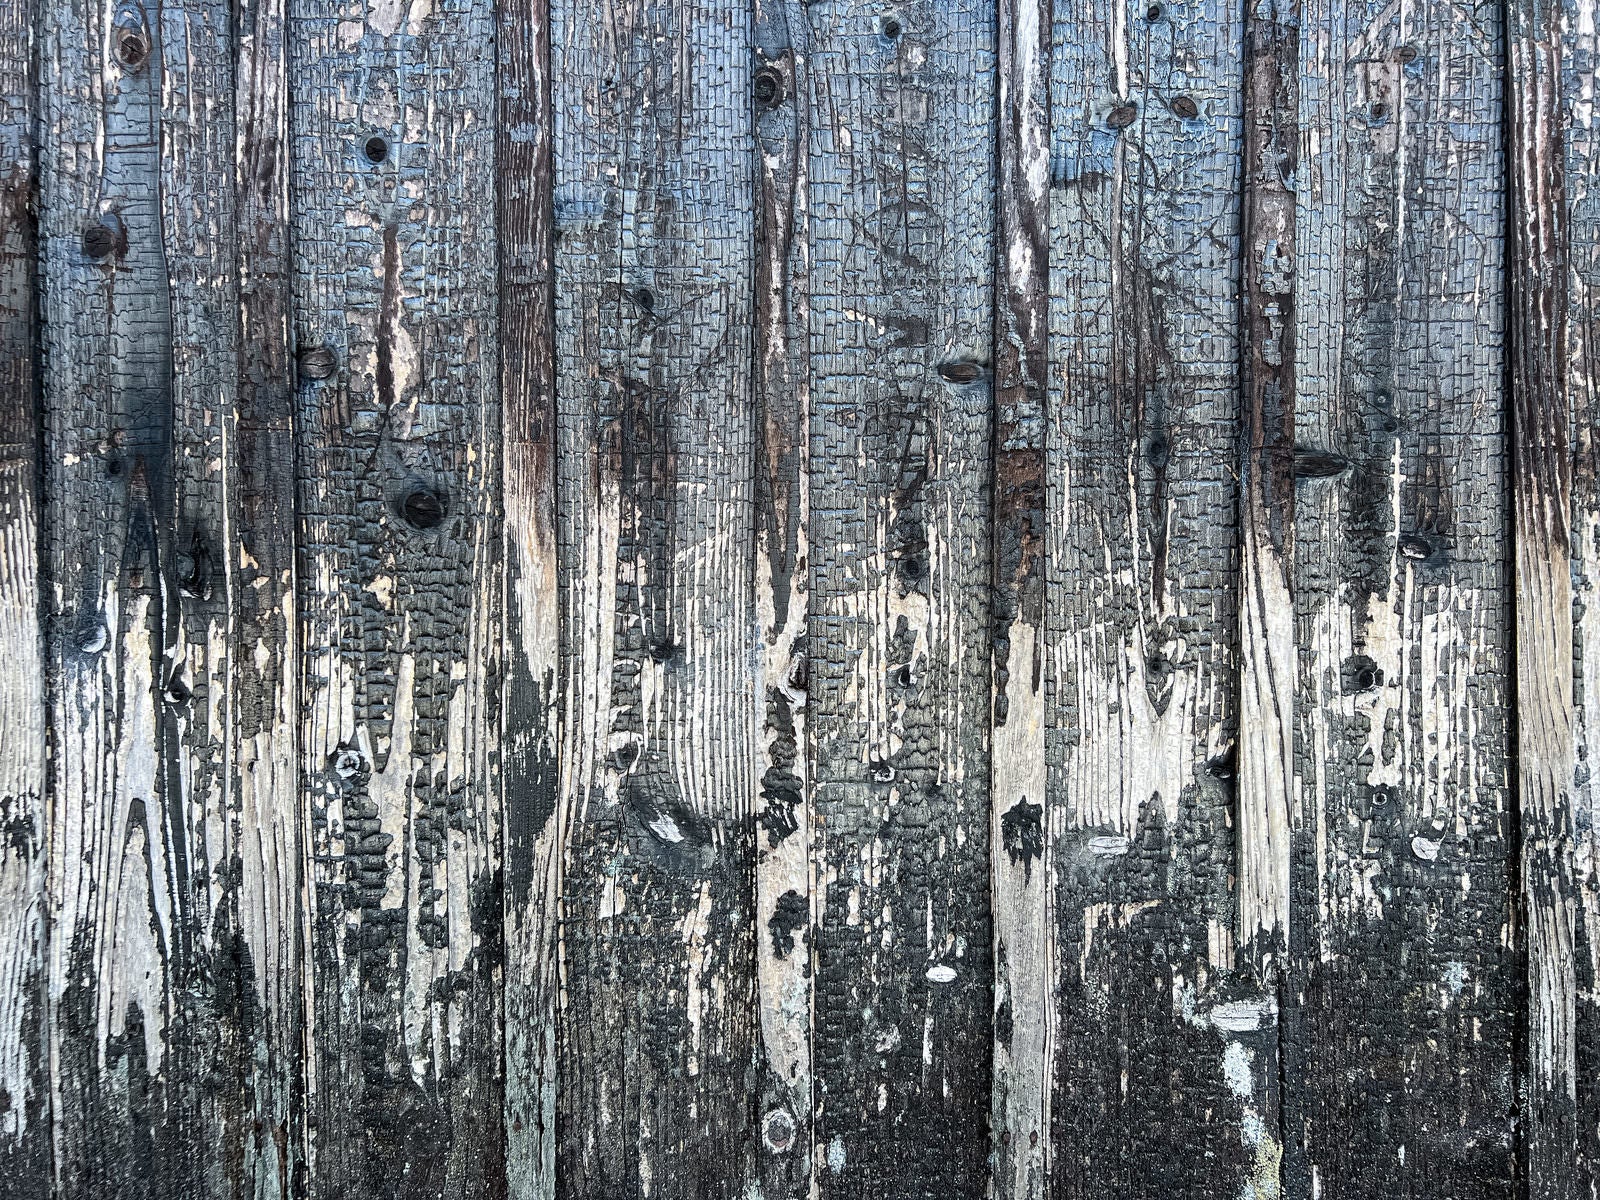 「ボロボロに劣化した板壁のテクスチャー」の写真